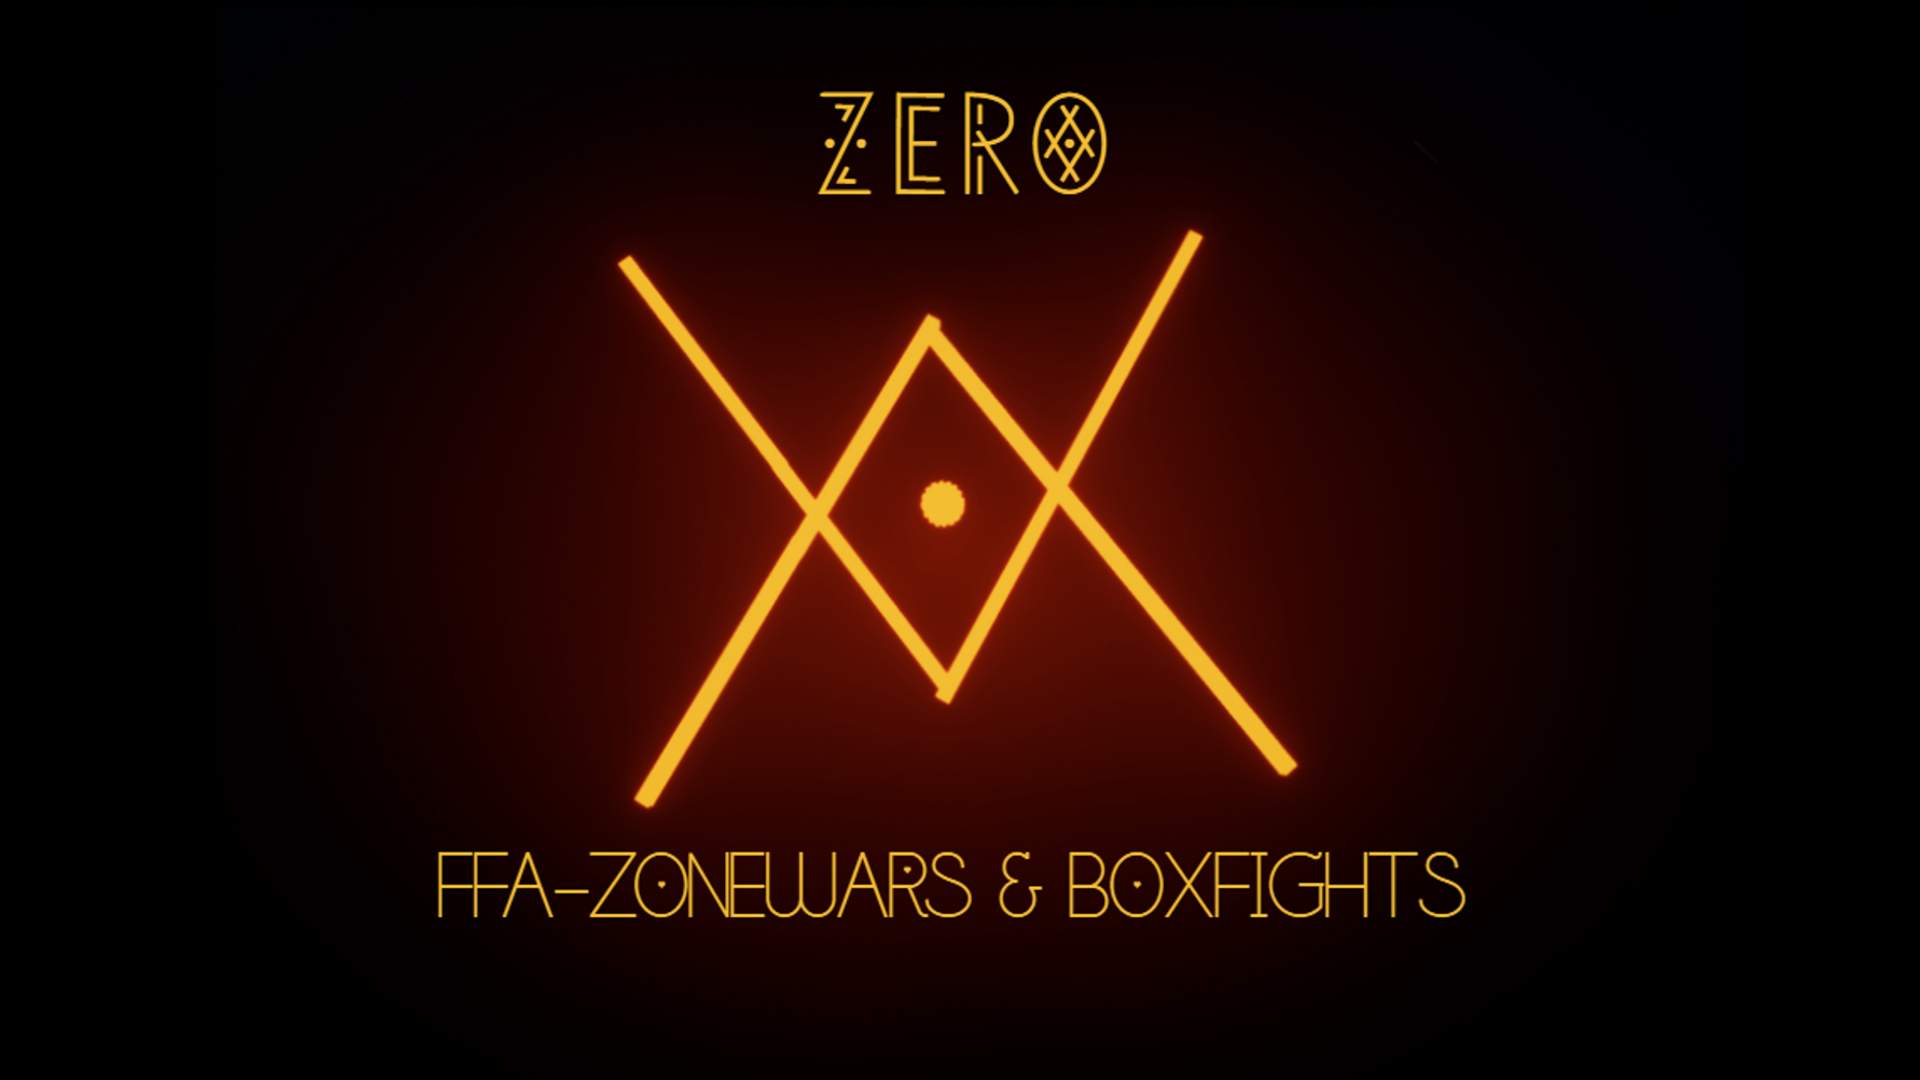 ZERO - FFA ZONEWARS & BOXFIGHTS